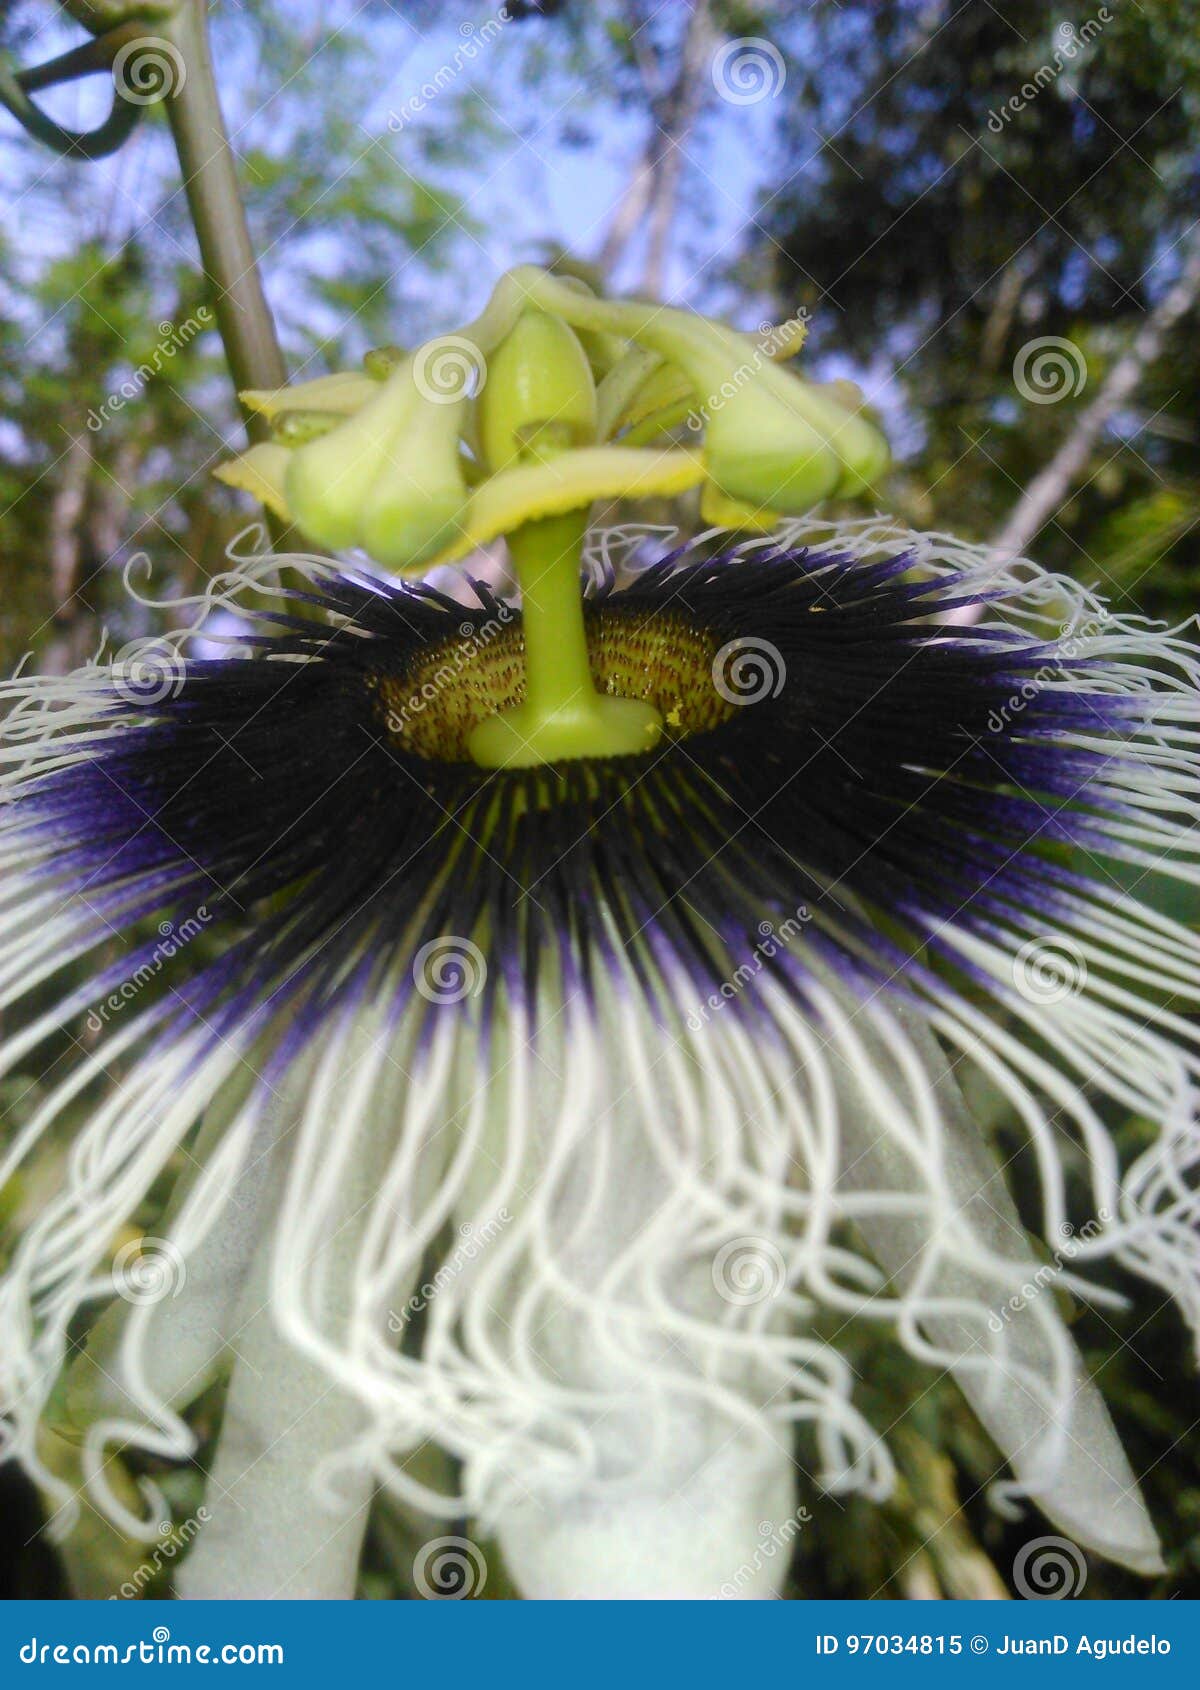 passion flower - flor de maracuyÃÂ¡